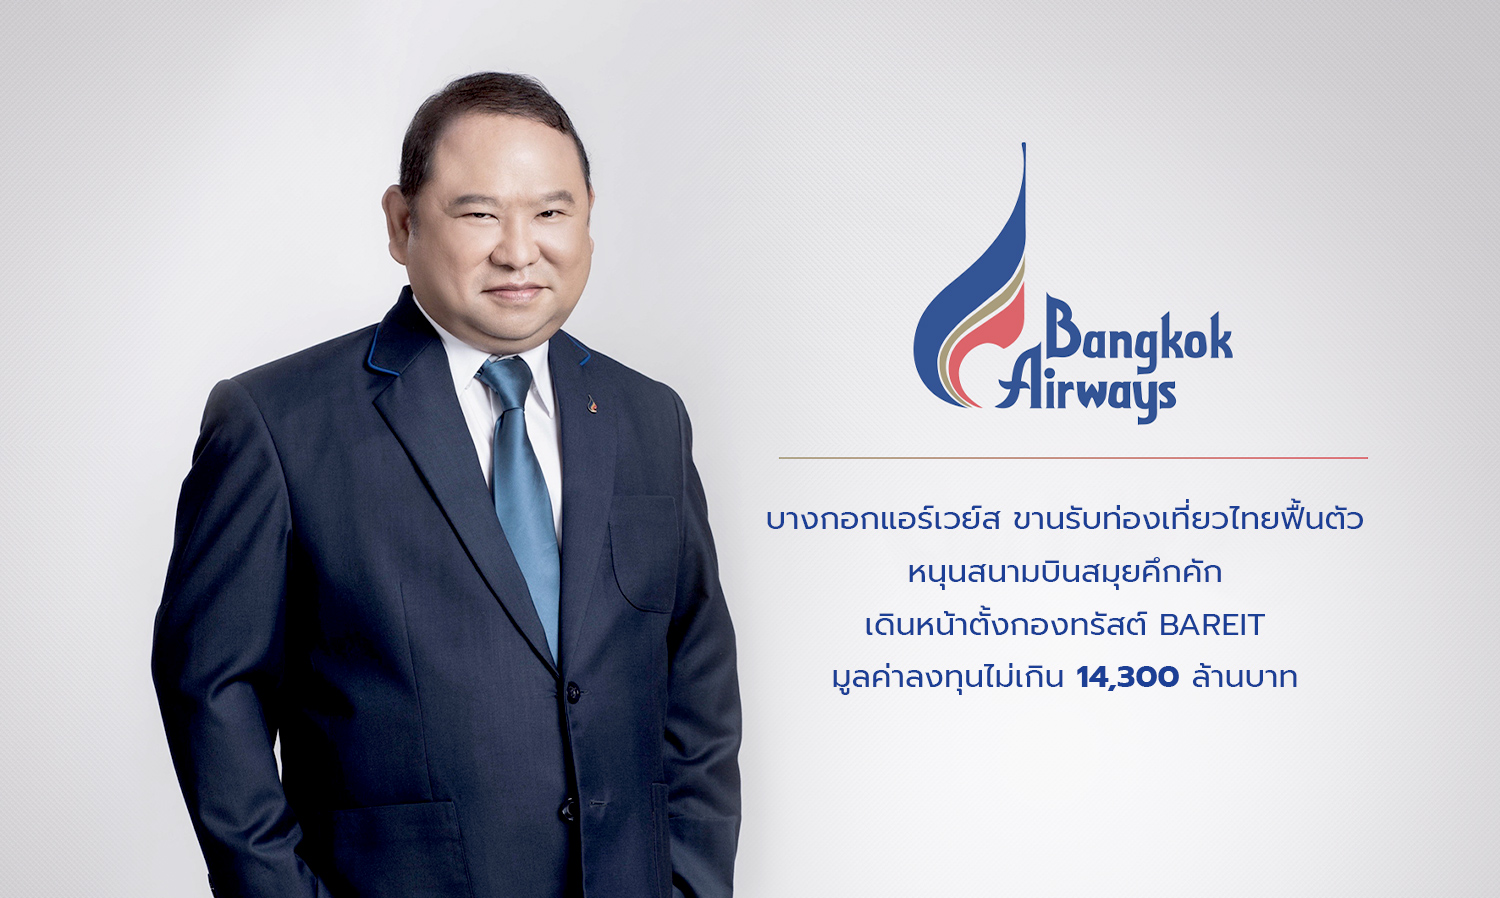 บางกอกแอร์เวย์ส ขานรับท่องเที่ยวไทยฟื้นตัวหนุนสนามบินสมุยคึกคัก เดินหน้าตั้งกองทรัสต์ BAREIT มูลค่าลงทุนไม่เกิน 14,300 ล้านบาท